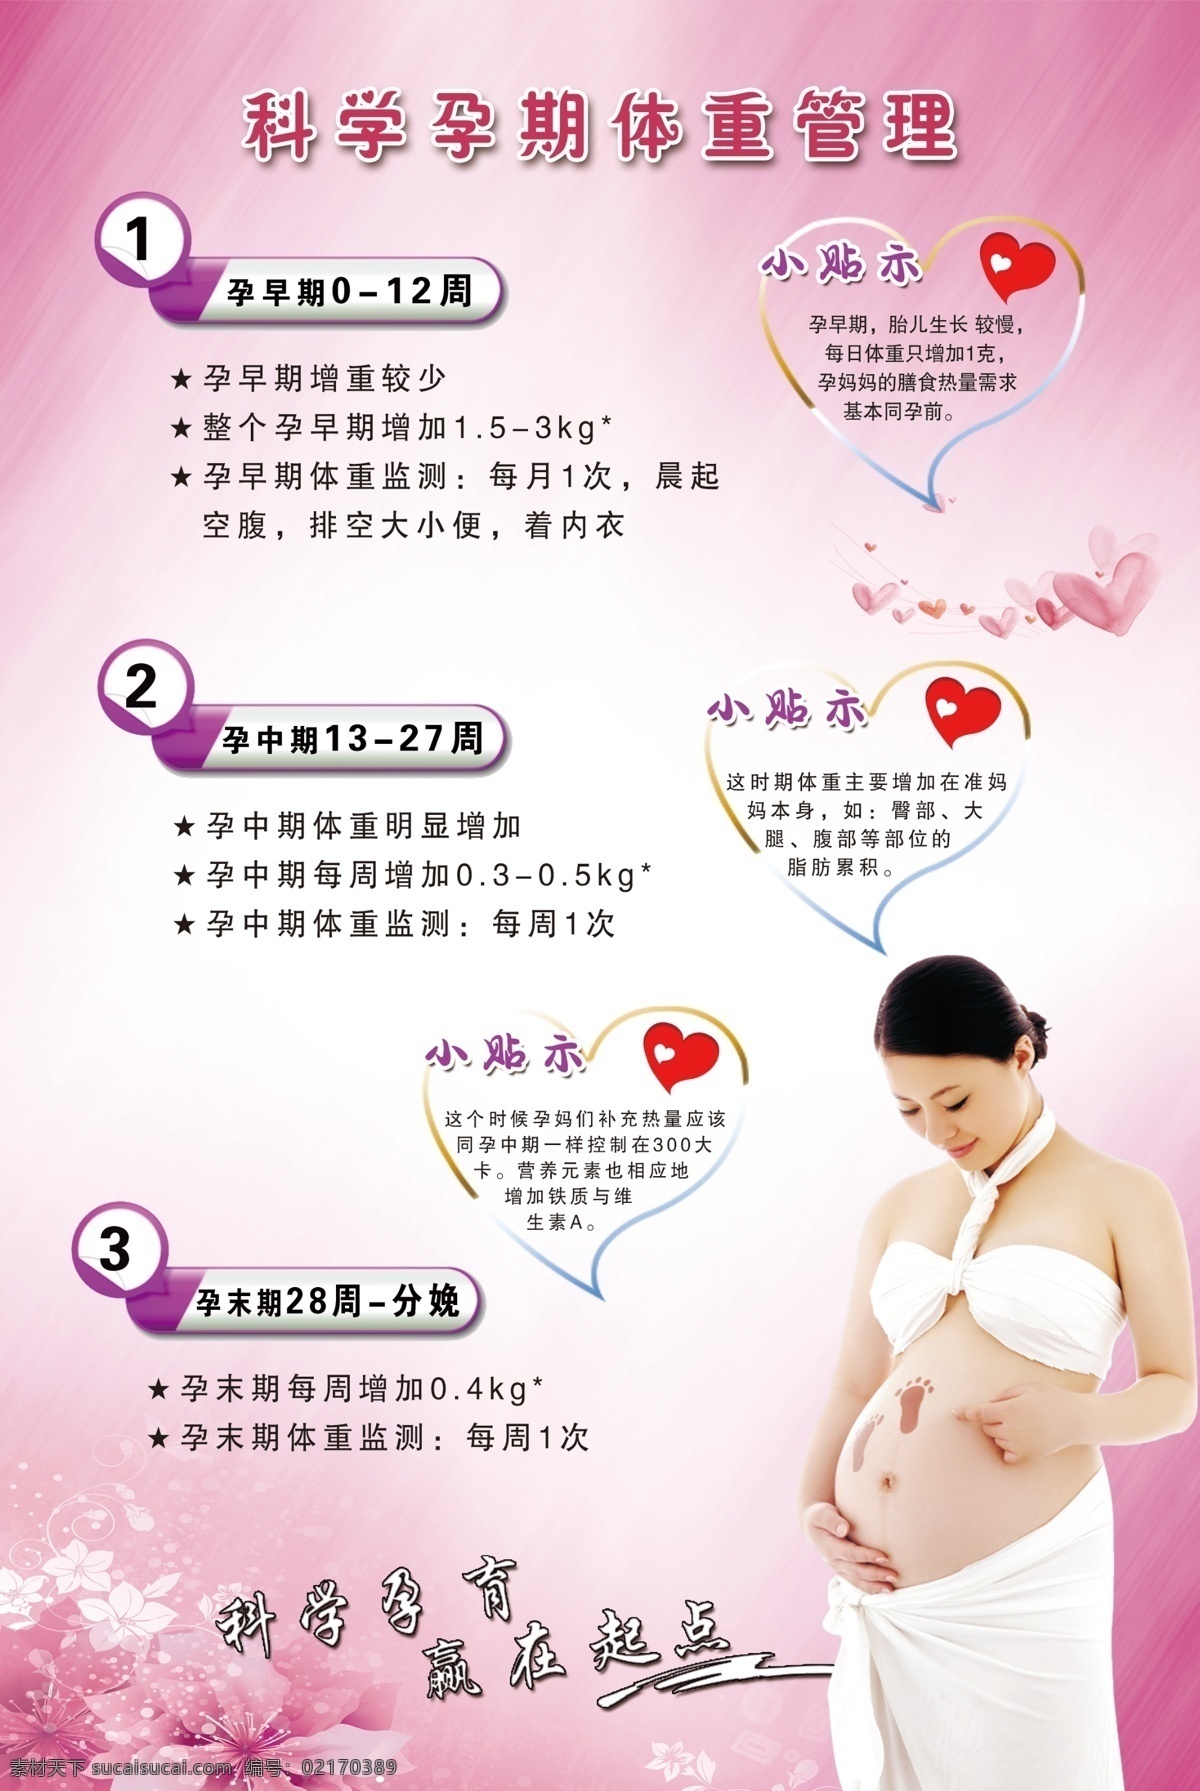 科学 孕期 体重 管理 科学孕期体重 孕期体重管理 孕期体重 体重管理 红色展板 紫色展板 妇科 妇幼 妇科展板 预防展板 幼儿展板 母婴 分层